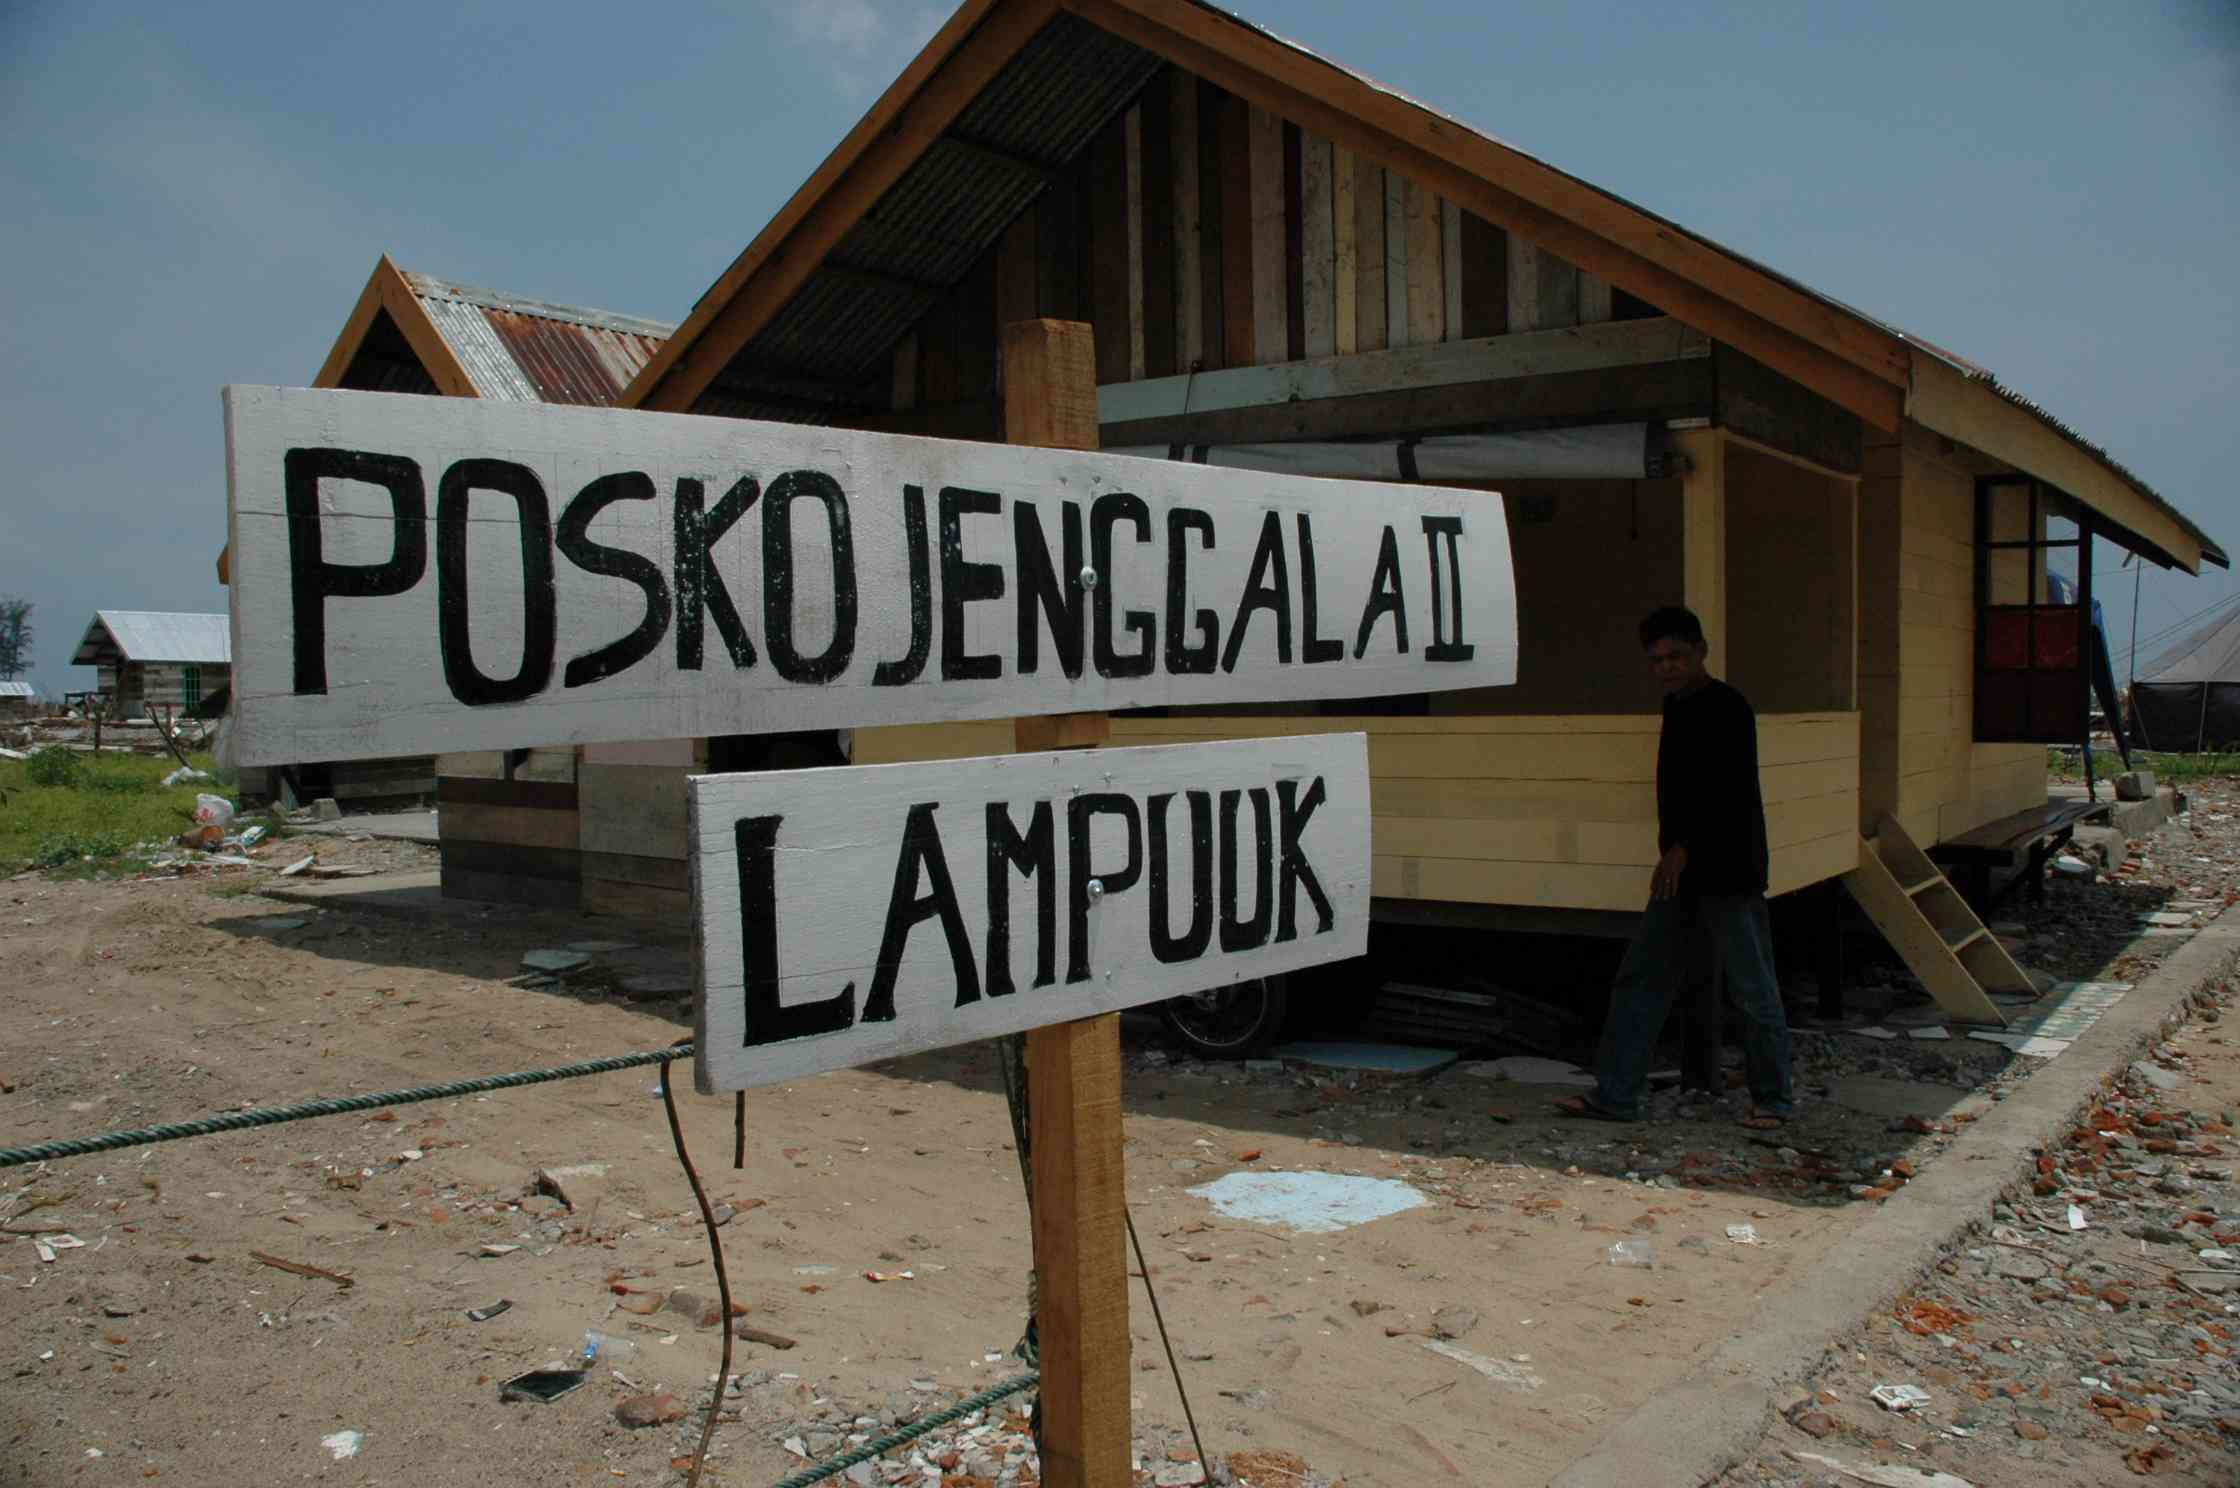 Gempa dan Tsunami Aceh, Munculnya Nama Posko Jenggala